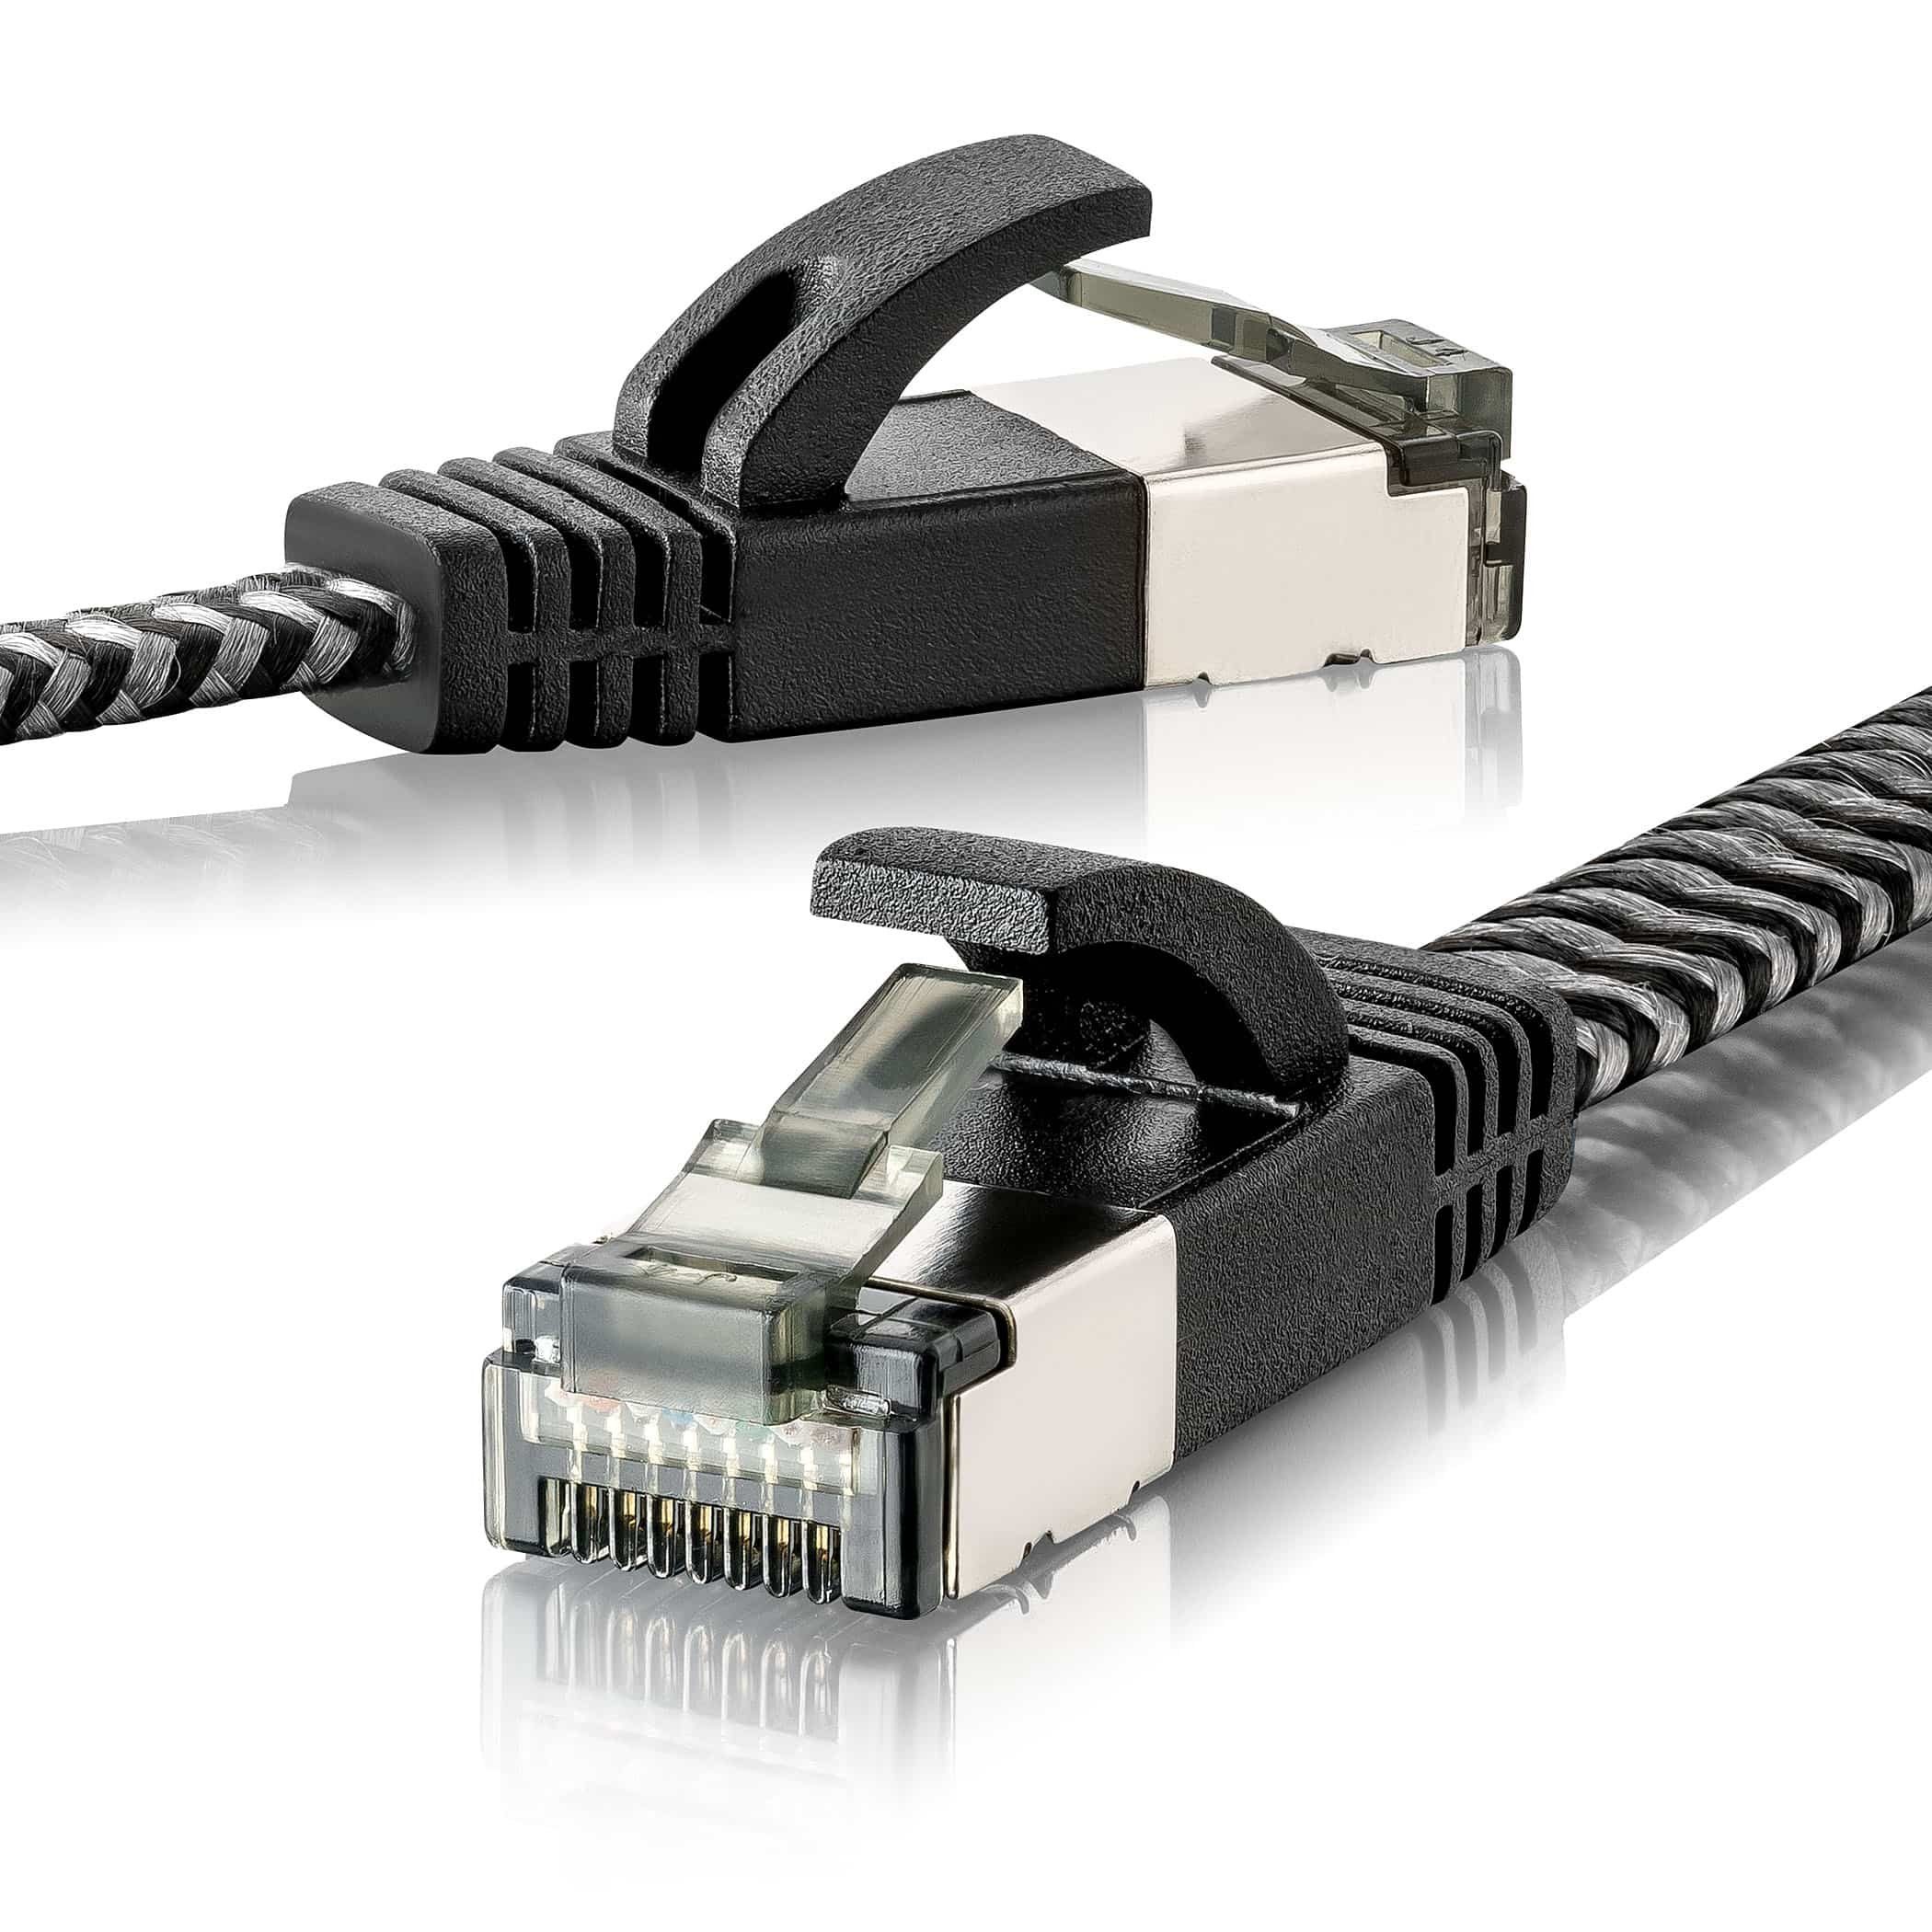 SEBSON »LAN Kabel 1m CAT 7 flach - Netzwerkkabel 10 Gbit/s - RJ45 Stecker -  Ethernet Kabel U-FTP abgeschirmt« Netzkabel, (100 cm) online kaufen | OTTO